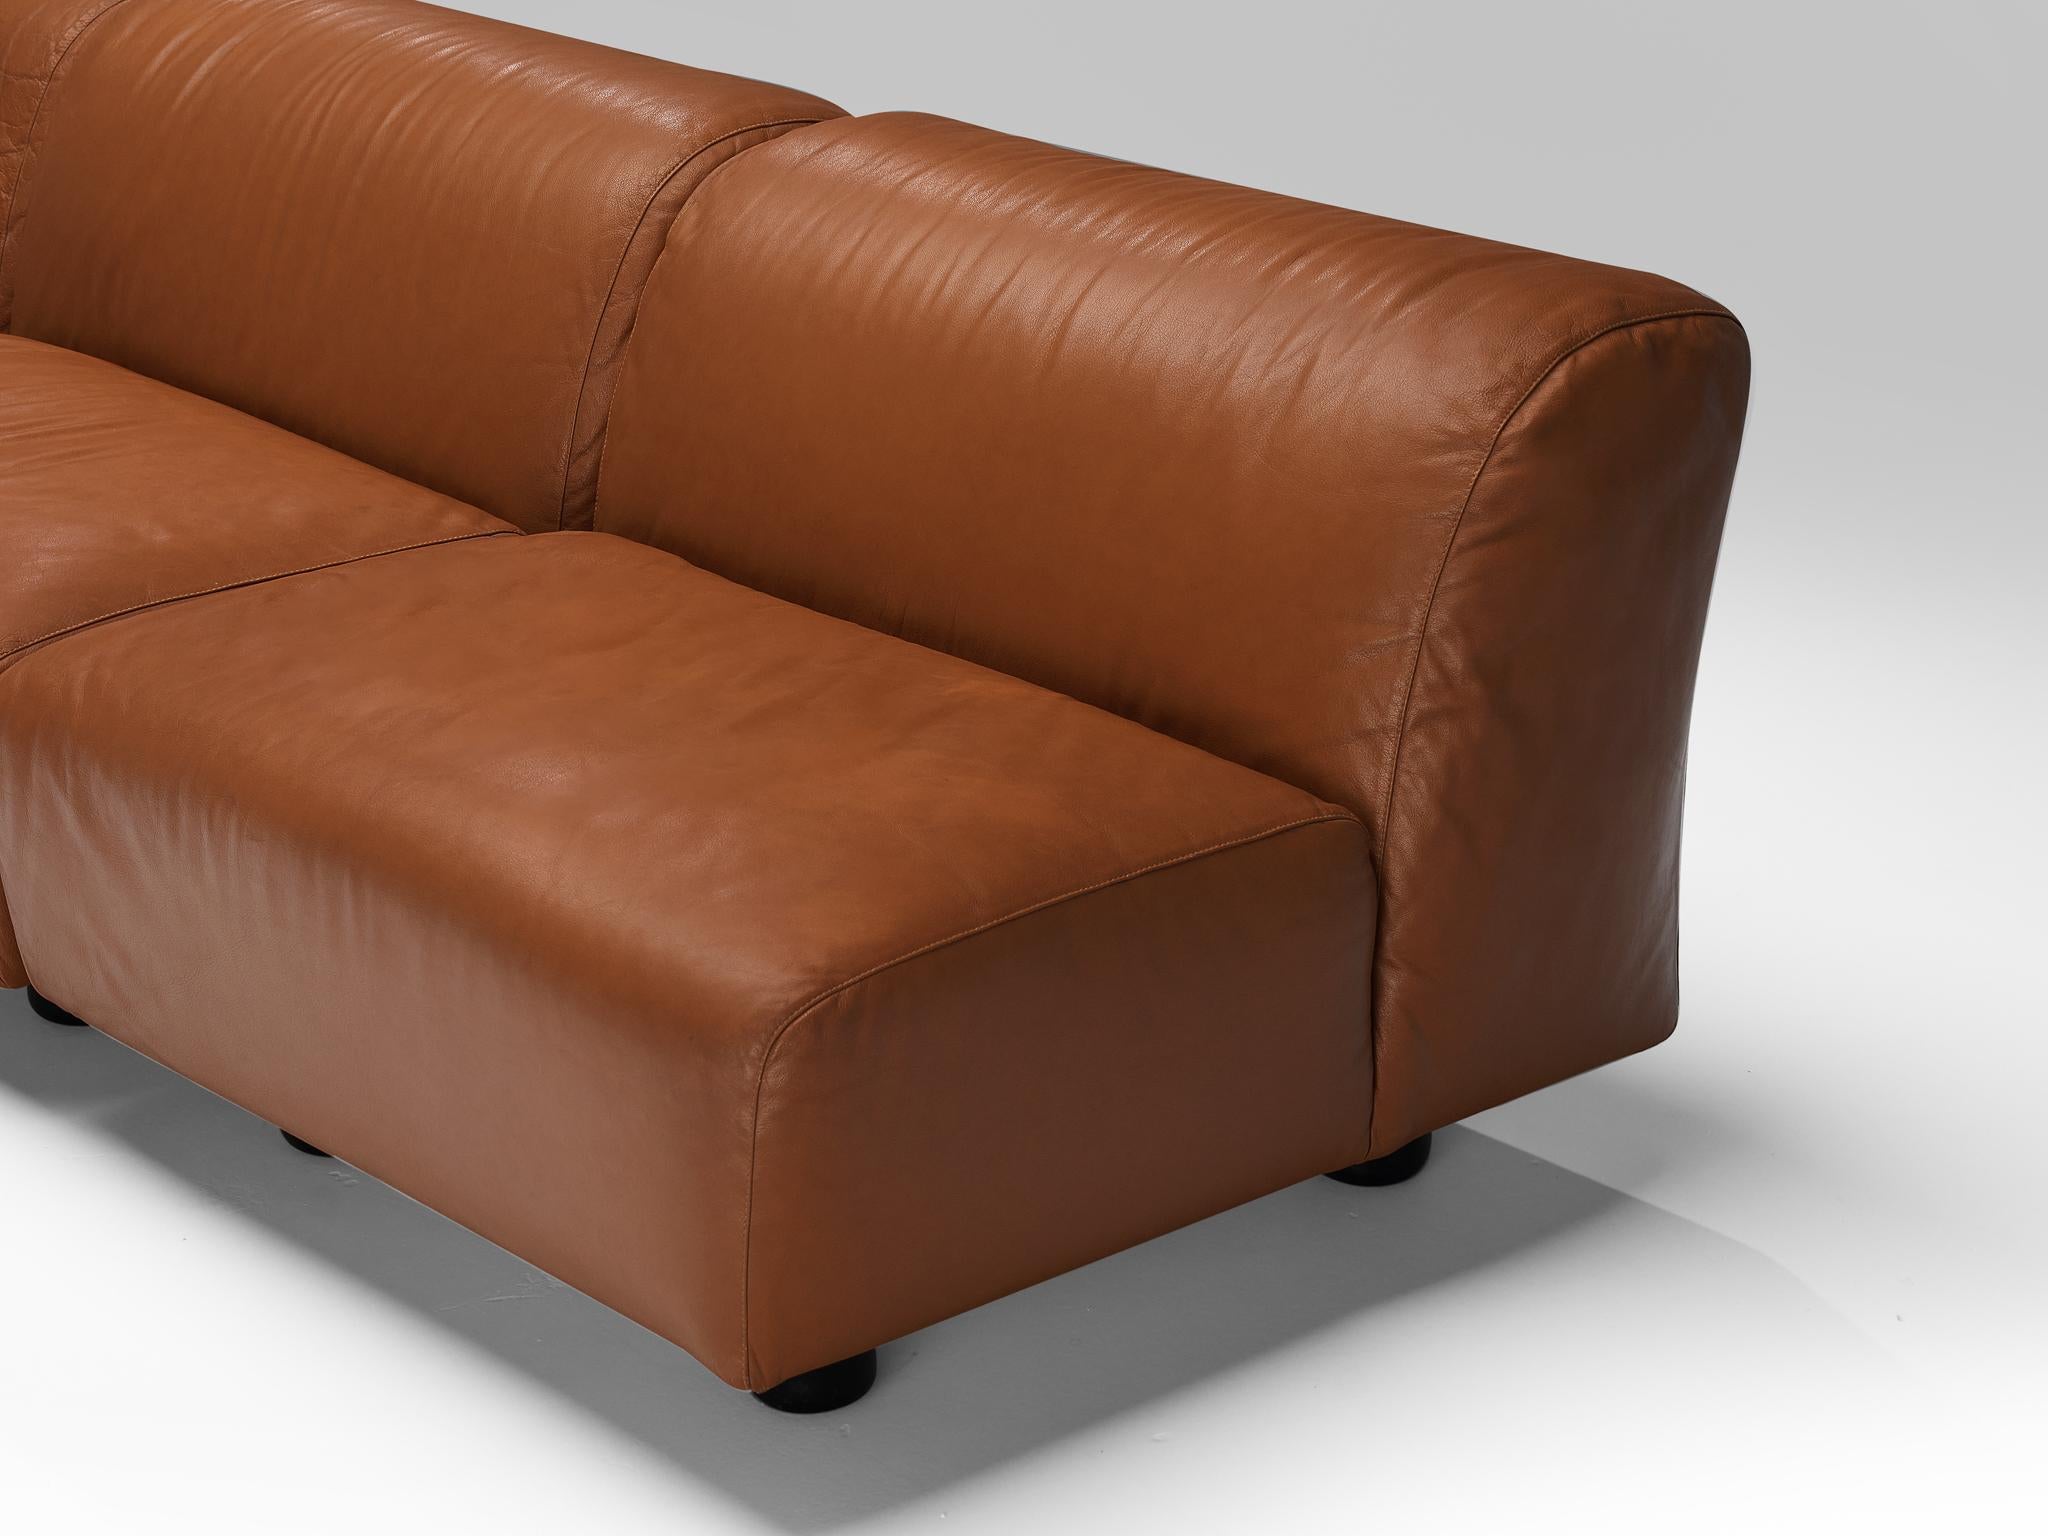 Late 20th Century Vico Magistretti for Cassina 'Fiandra' Modular Sofa in Brown Leather For Sale